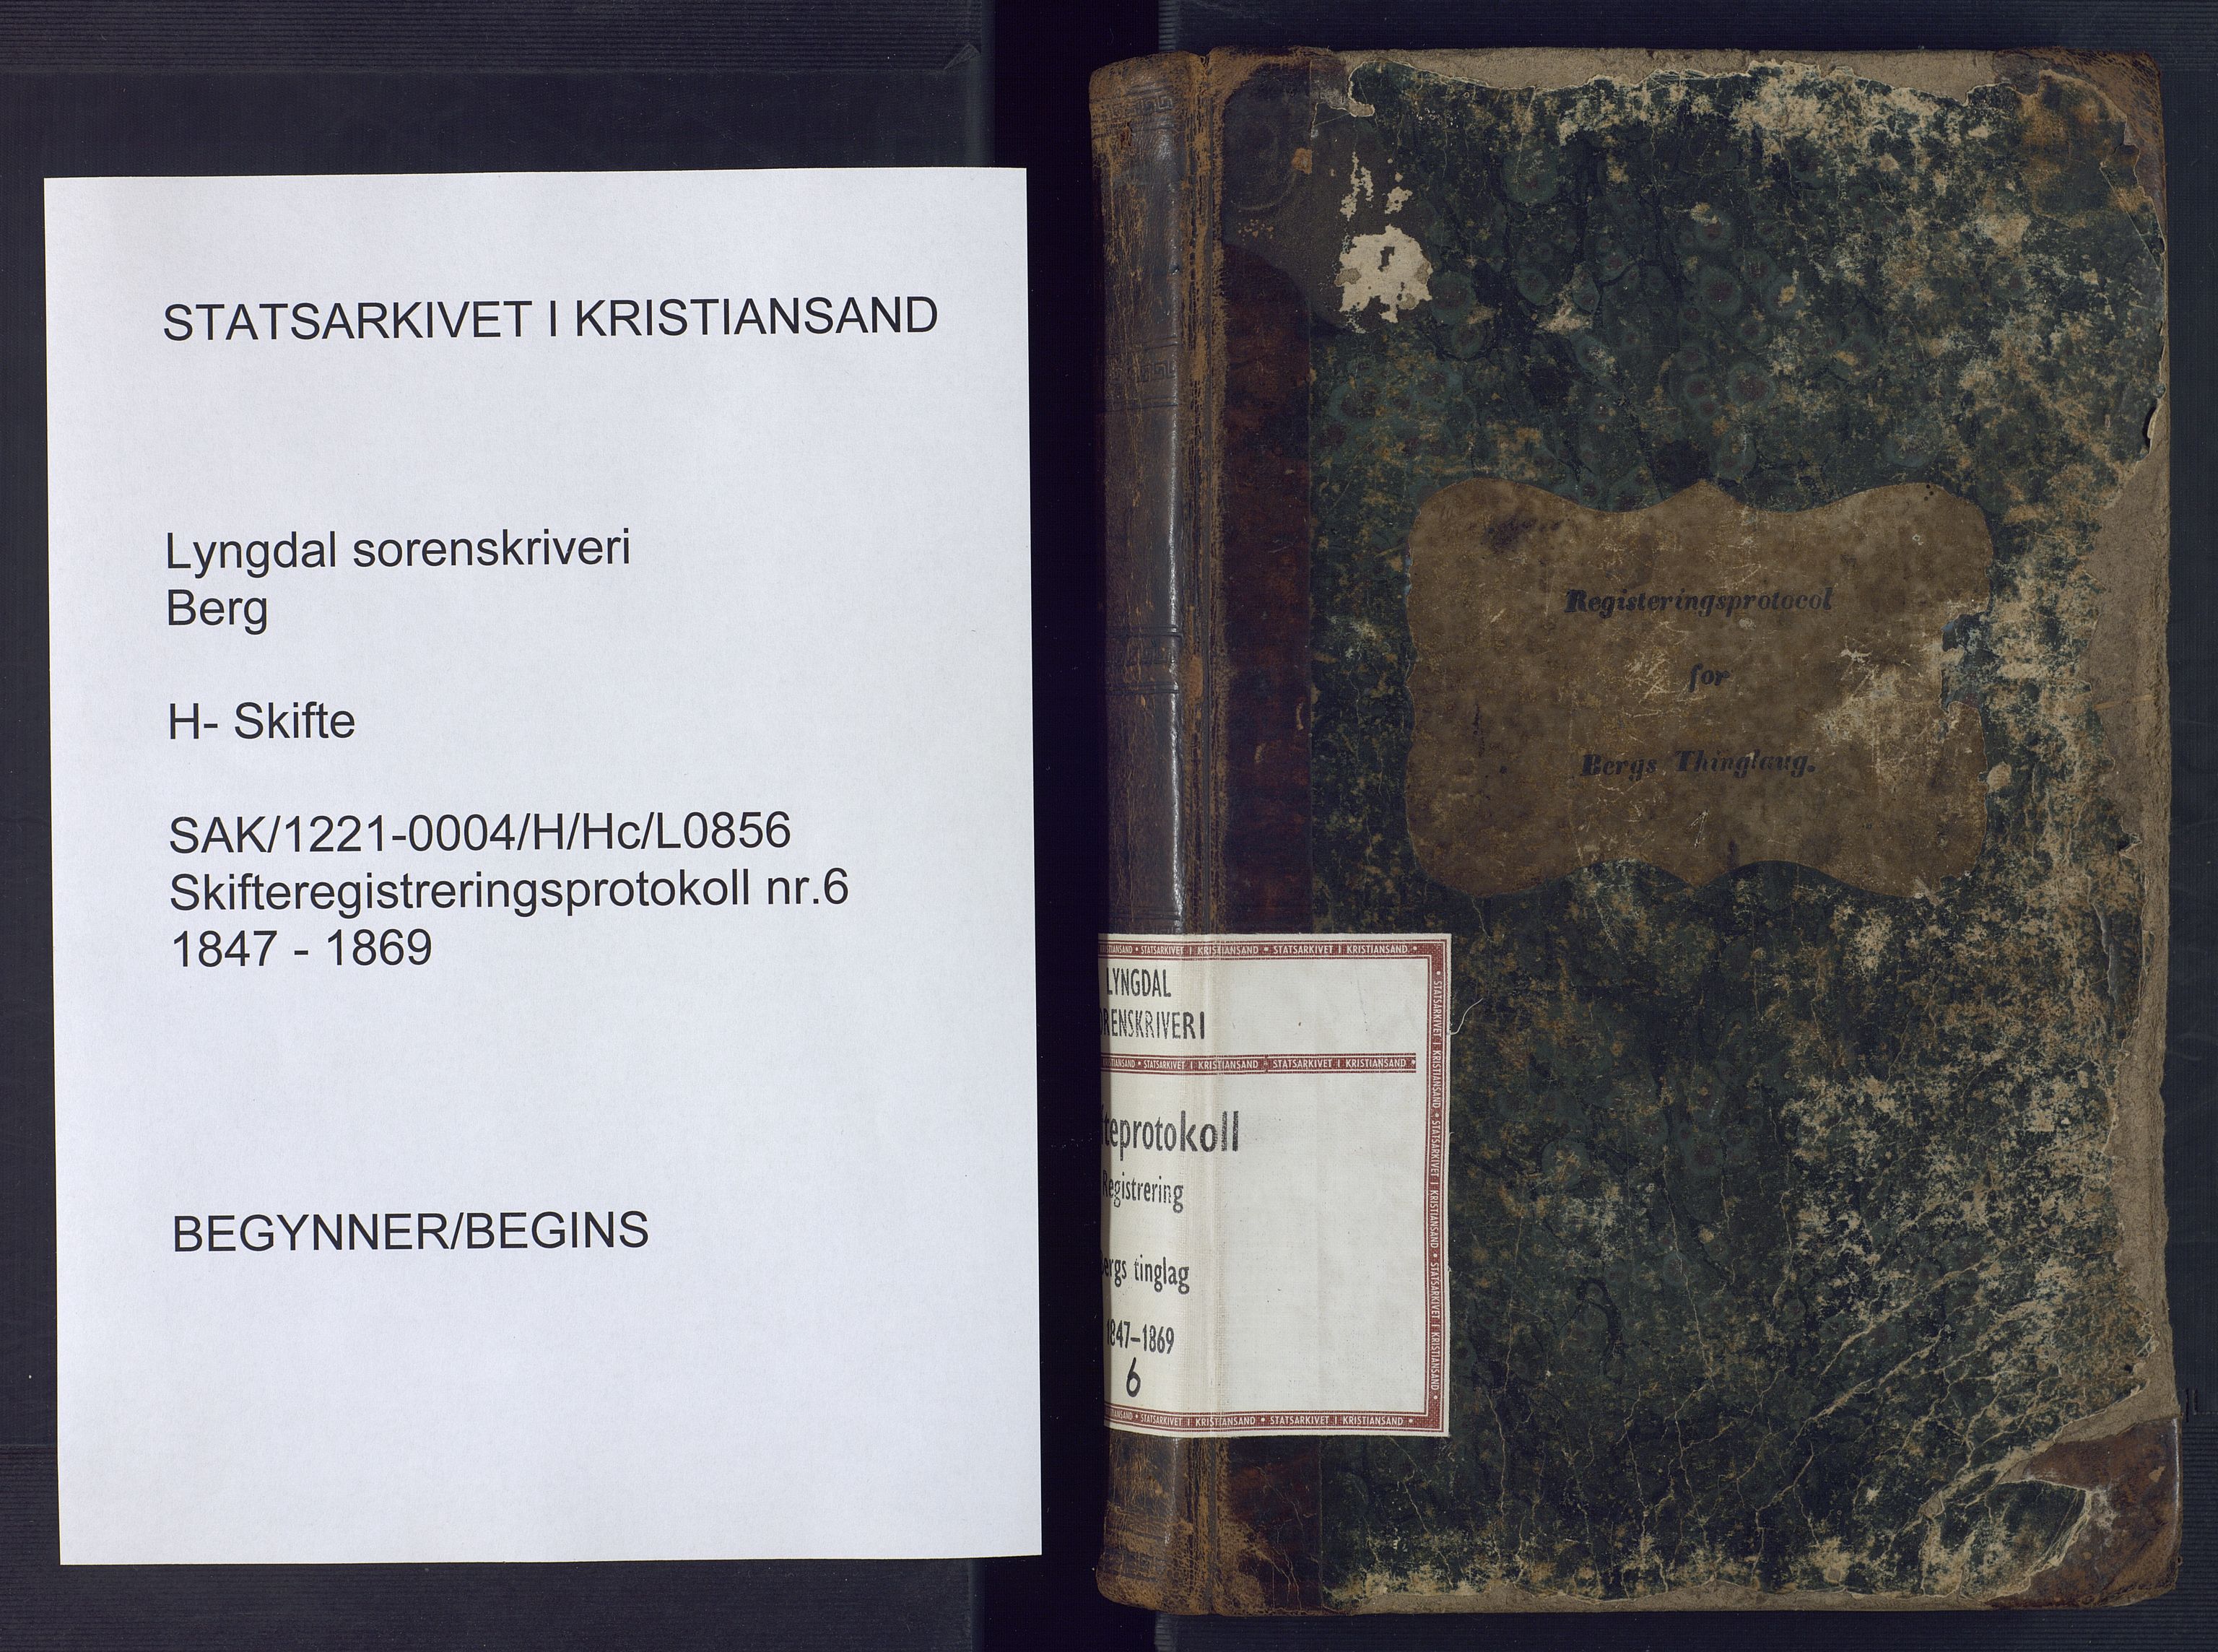 Lyngdal sorenskriveri, SAK/1221-0004/H/Hc/L0856: Skifteregistreringsprotokoll nr. 6, Berg tinglag, 1847-1869